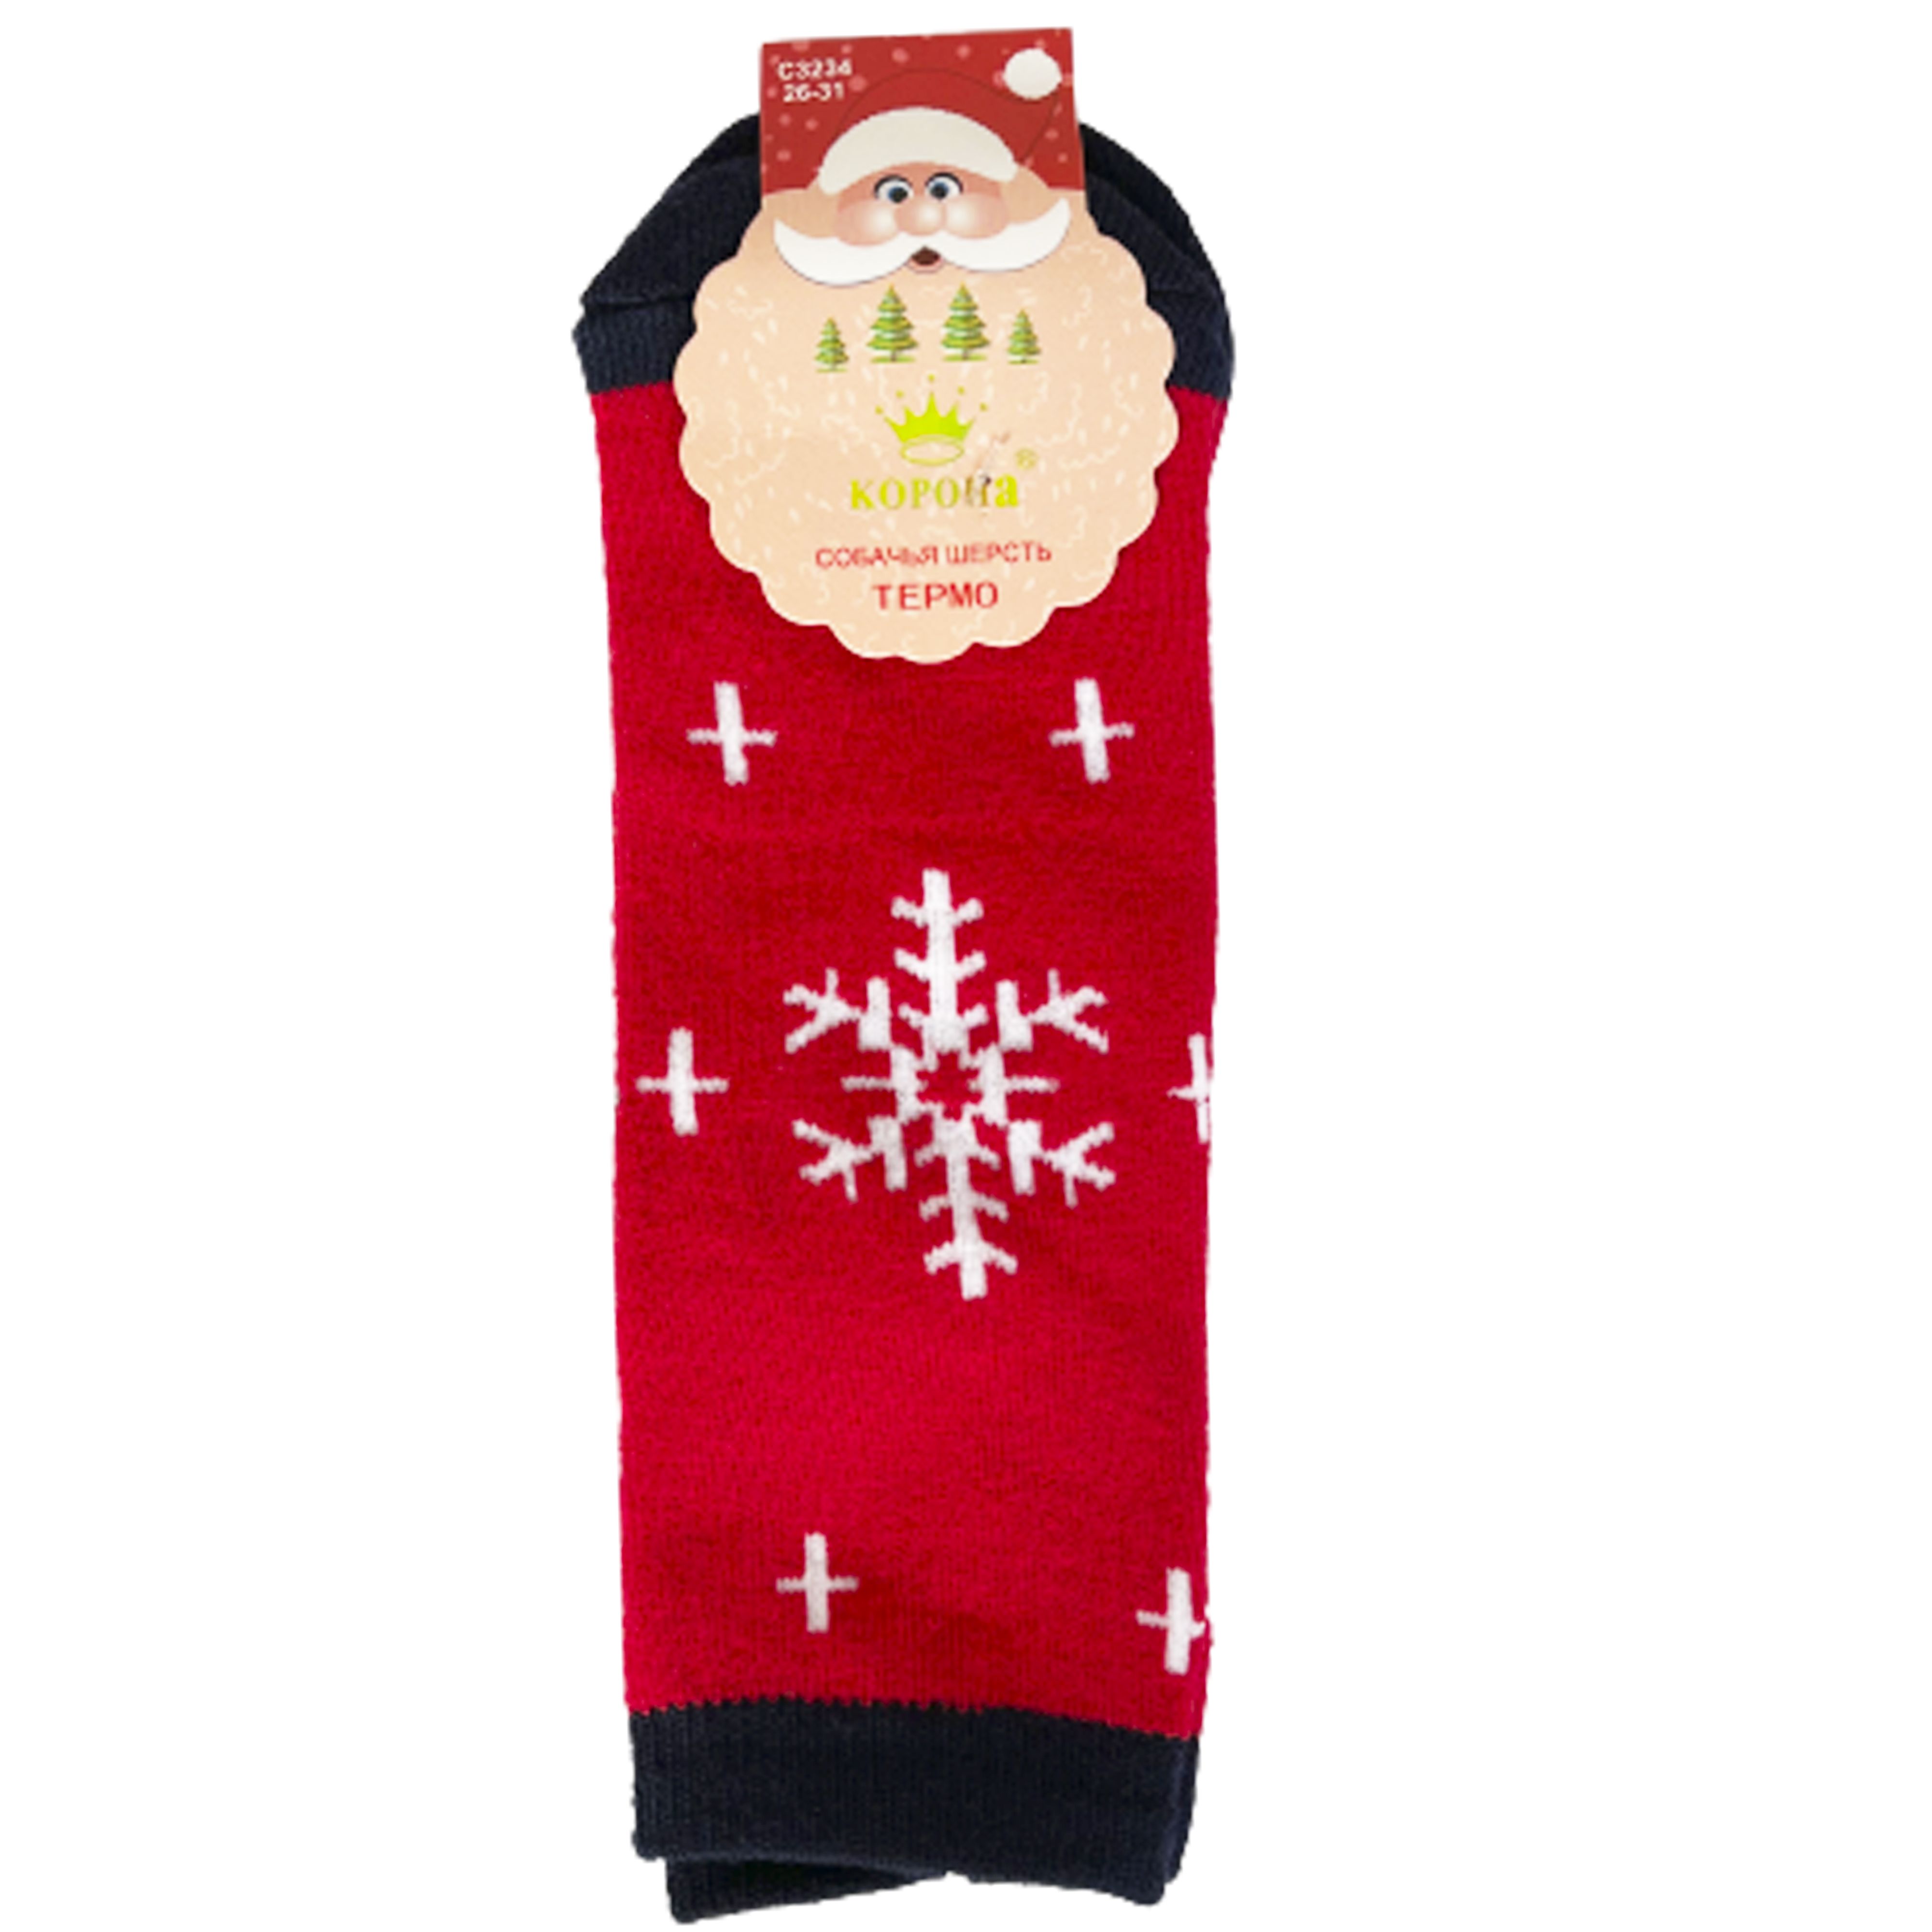 Шкарпетки TM Корона C3234 махрові, сніжинка, червоні, р. 21-26  thumbnail popup